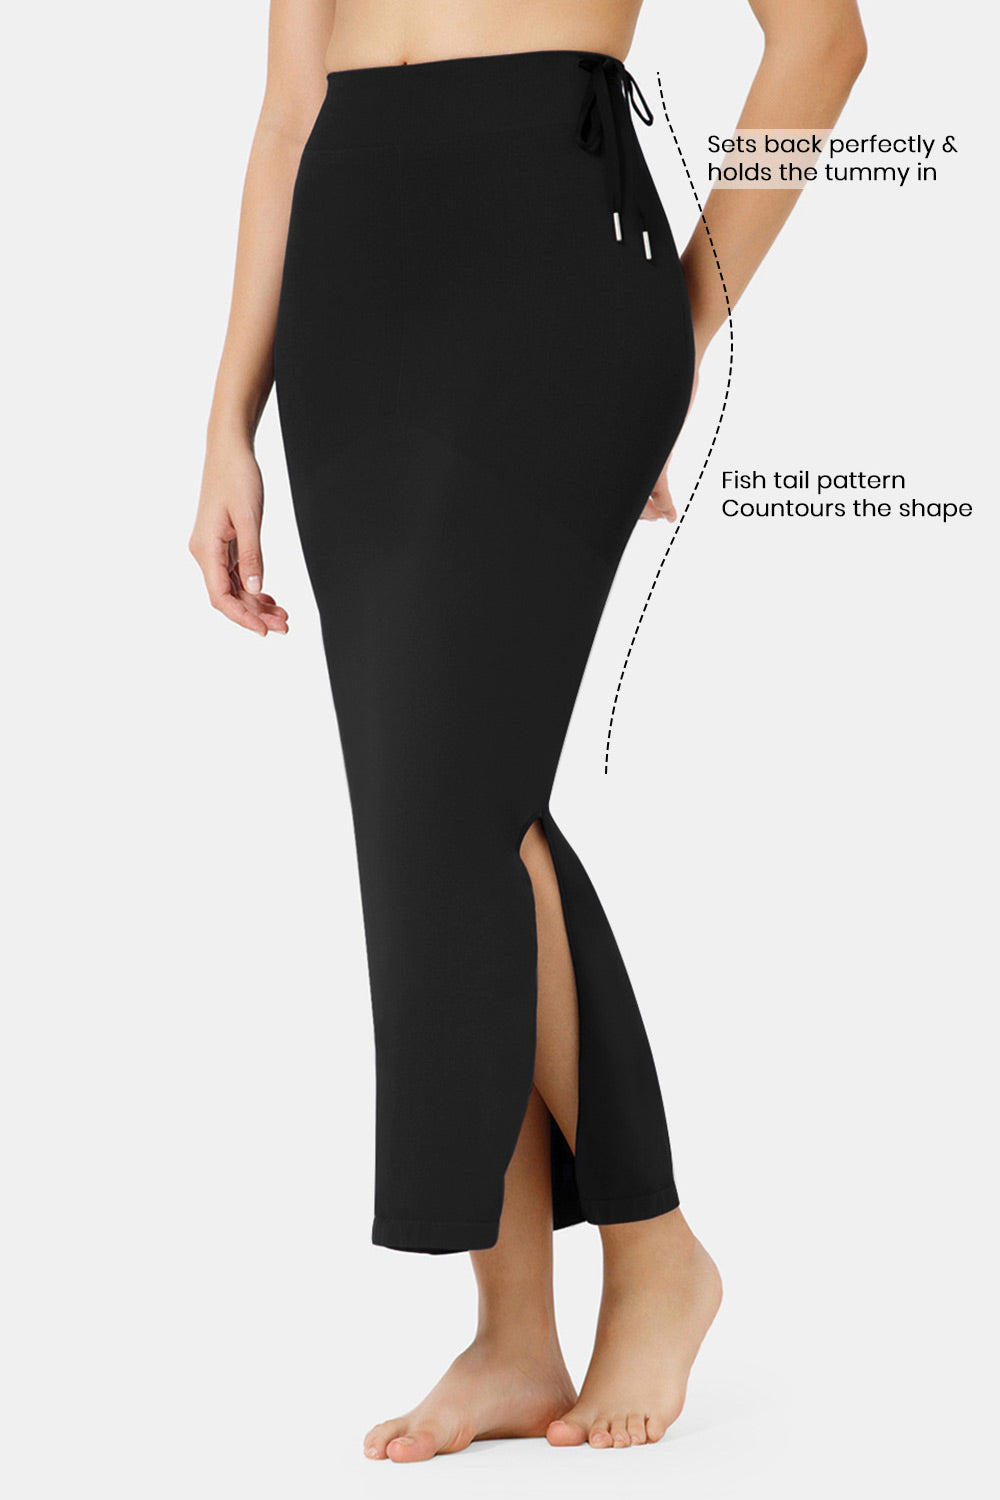 Saree Tummy Control Shapewear, Saree Waist Skirt, Black Saree Slimming  Shapewear